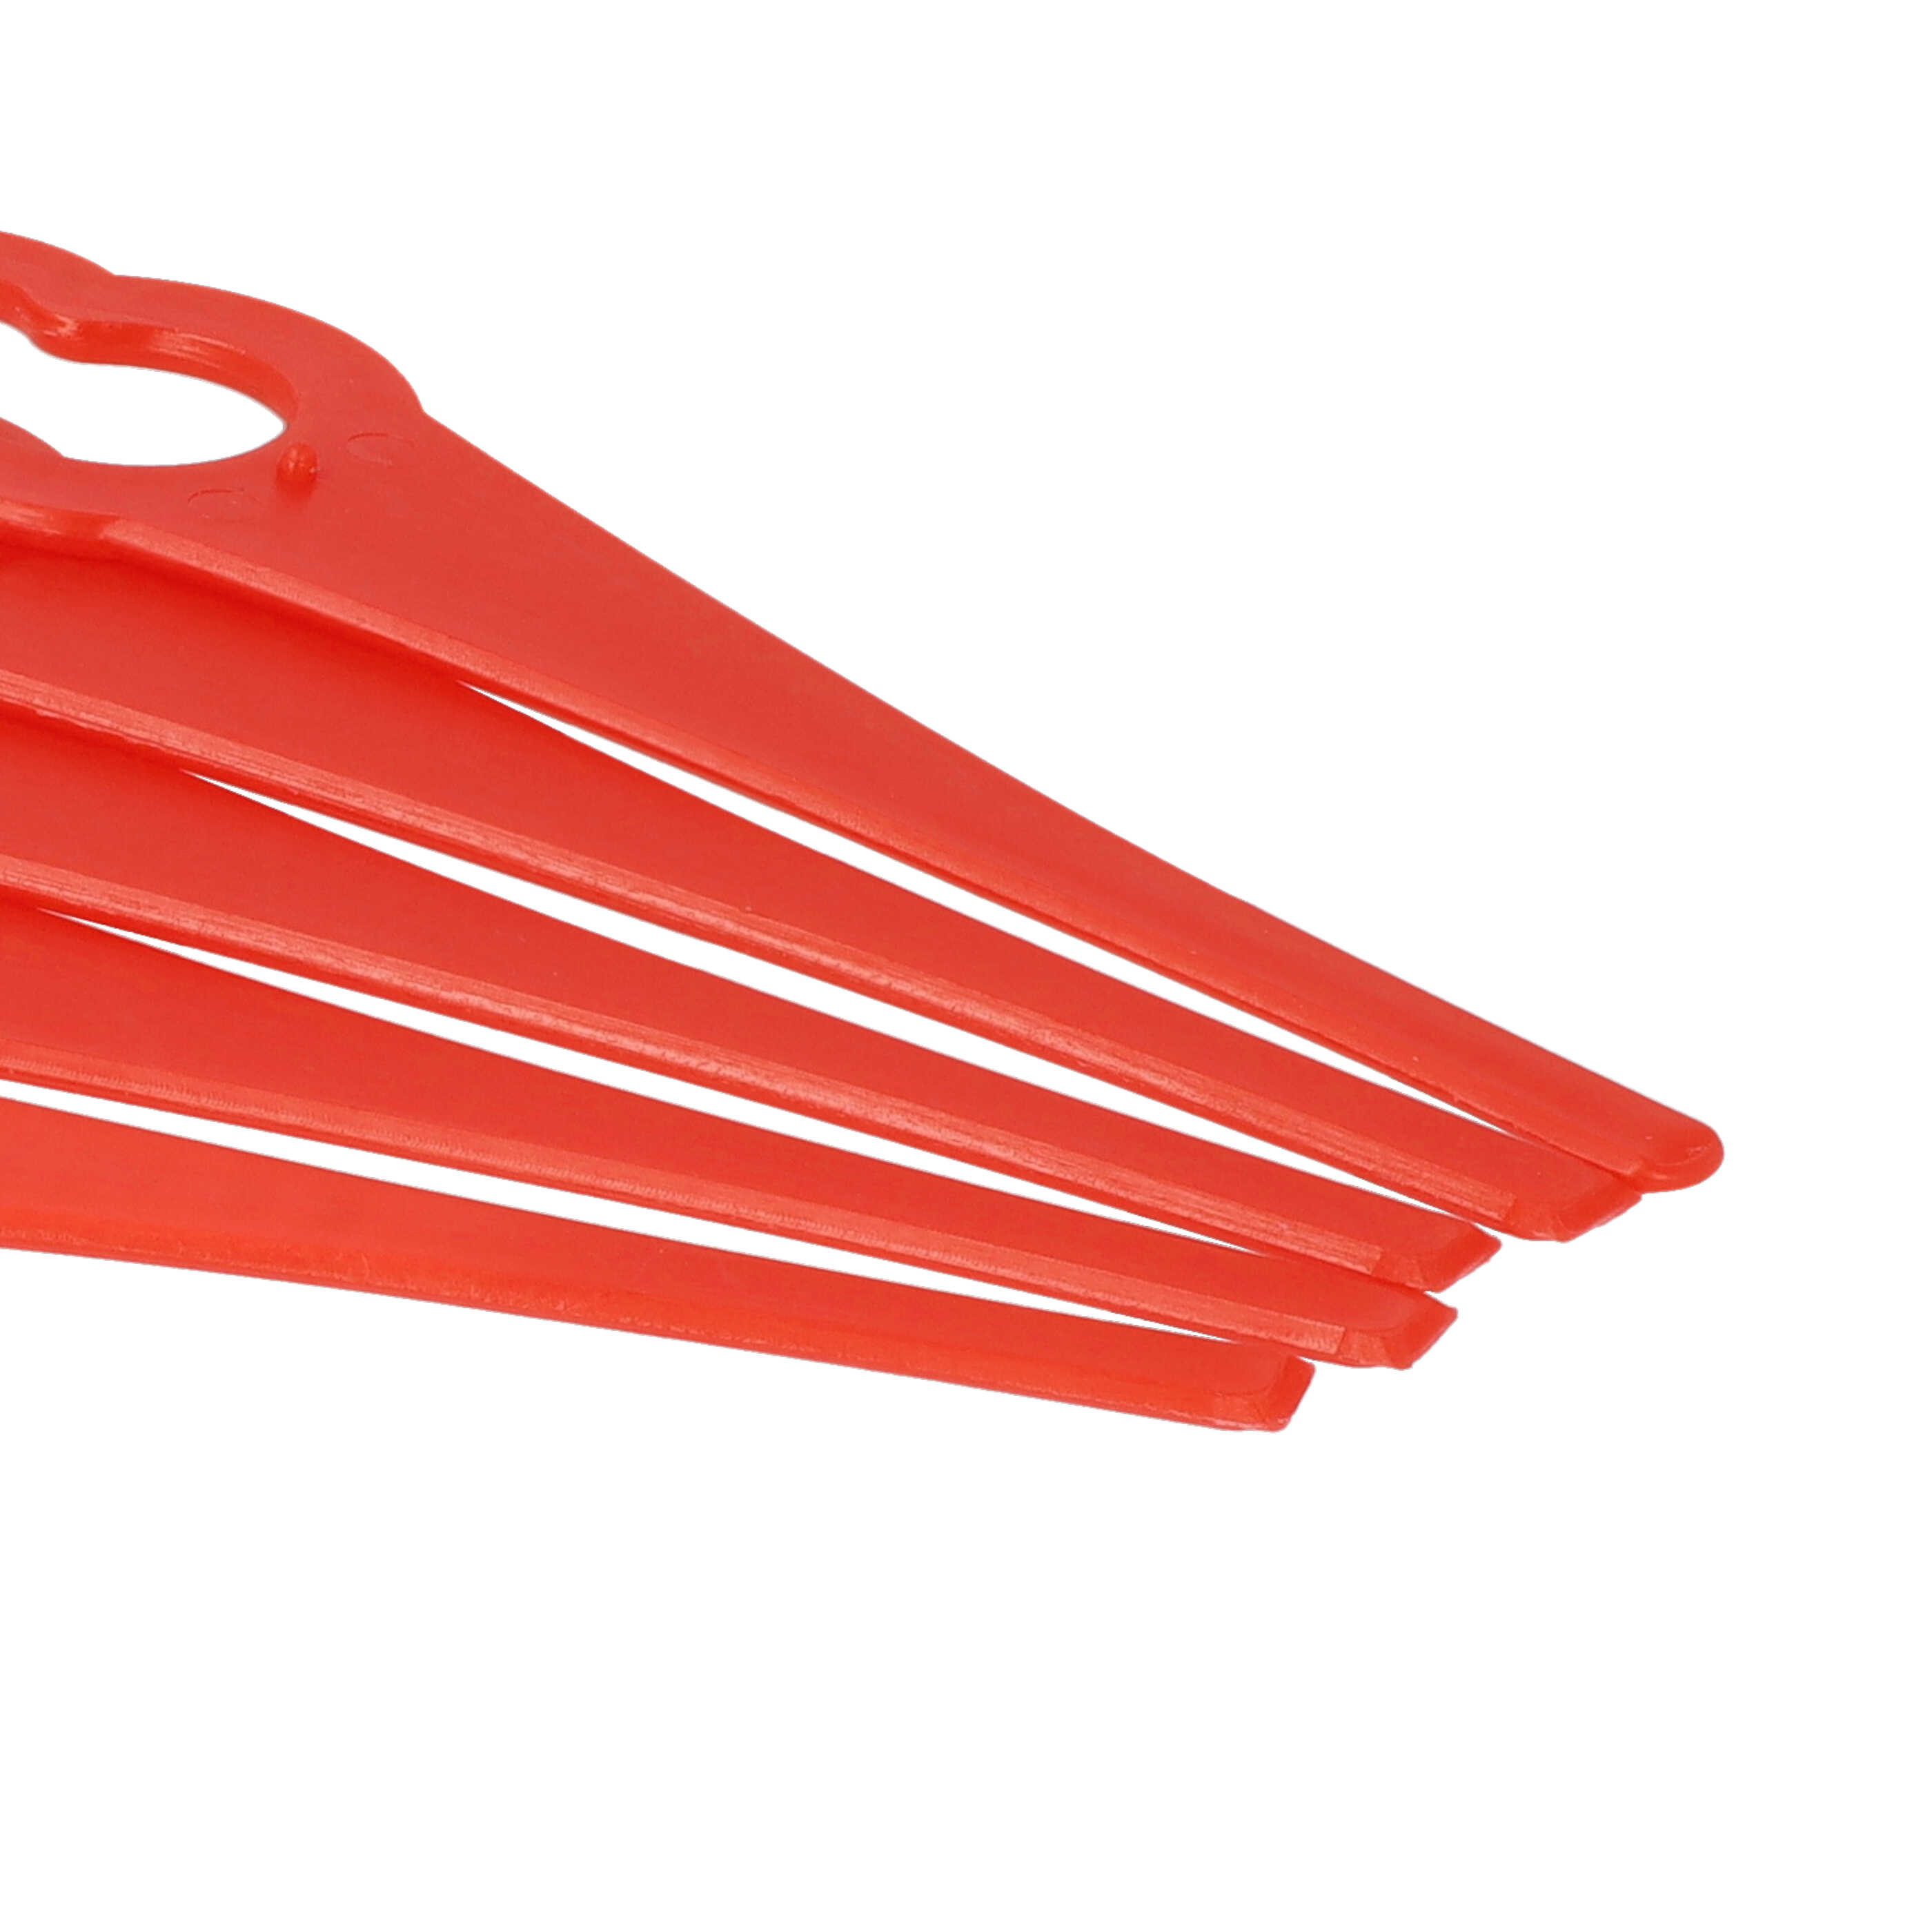 20x Lama sostituisce ALM BQ026 per tagliaerba - rosso, nylon / plastica